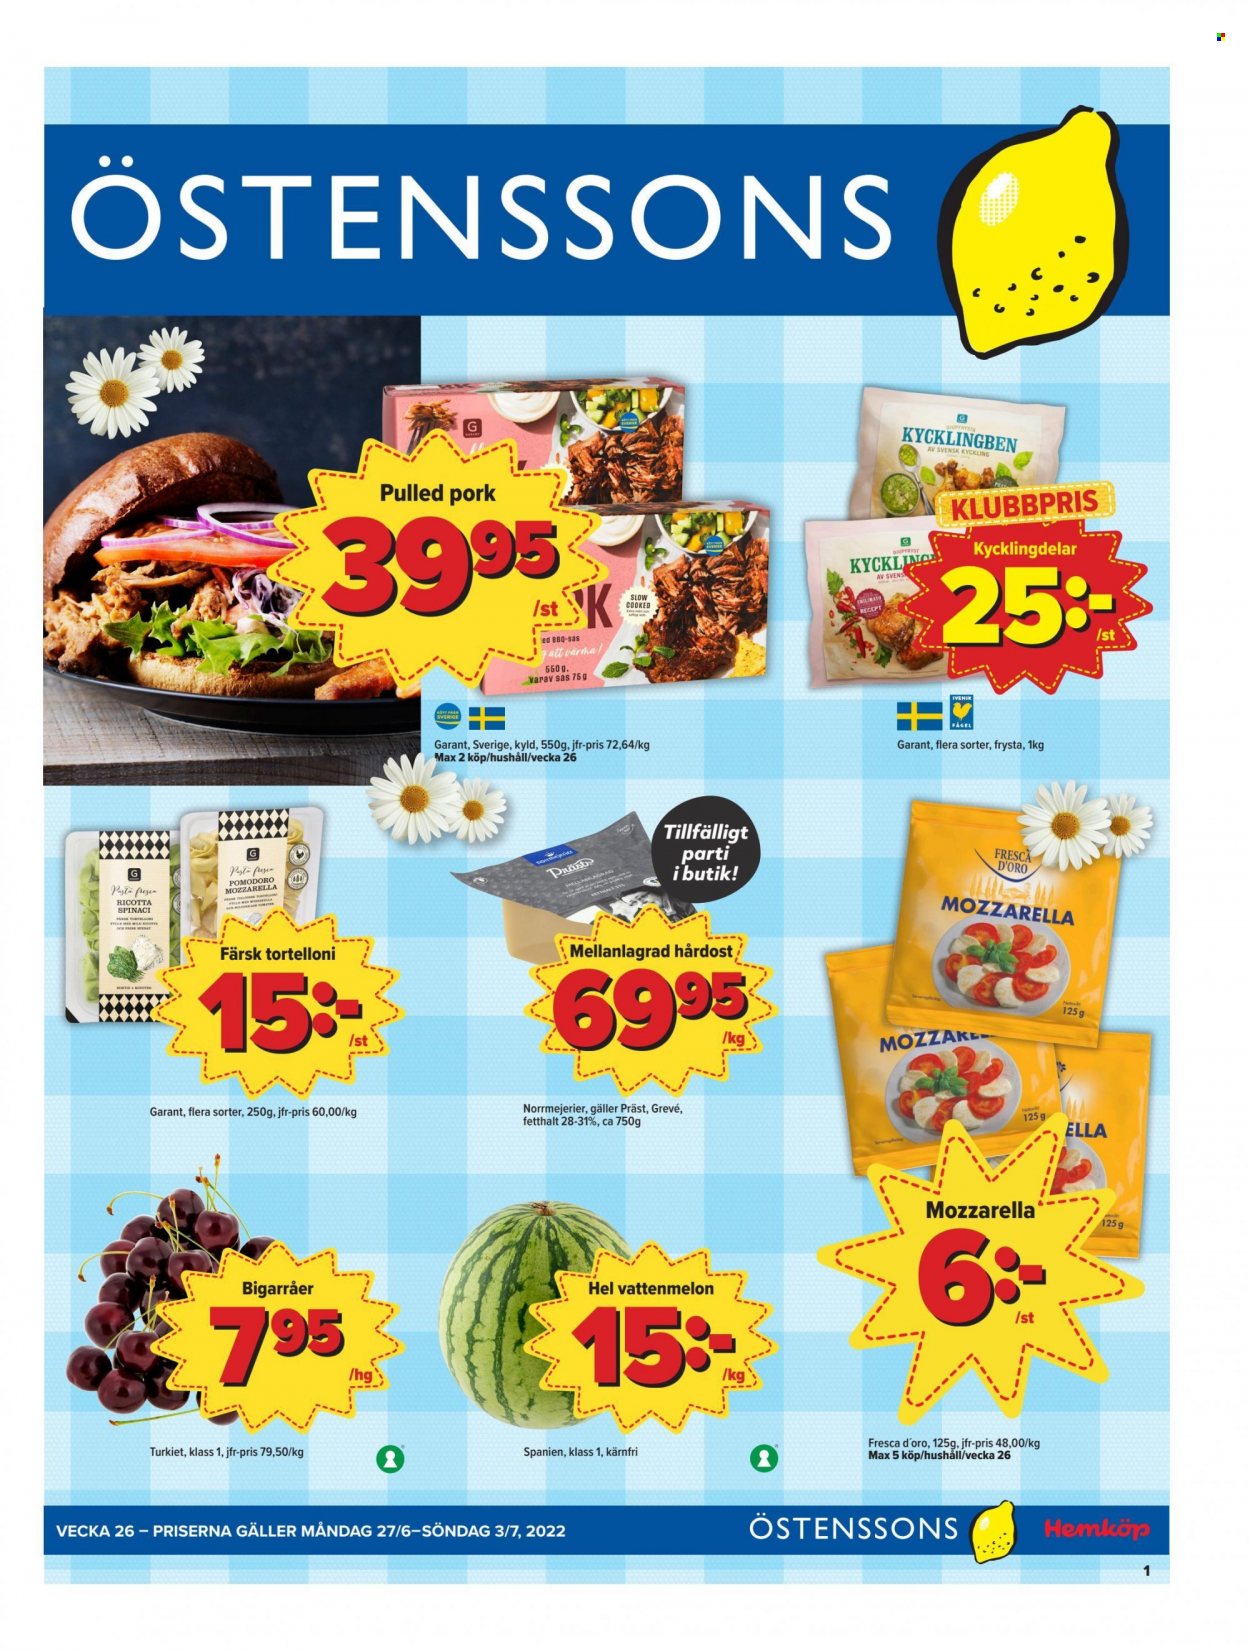 thumbnail - Östenssons reklamblad - 27/6 2022 - 3/7 2022 - varor från reklamblad - kyckling, bigarråer, vattenmelon, pulled pork, tortelloni, Präst, Grevé, hårdost, pasta. Sida 1.